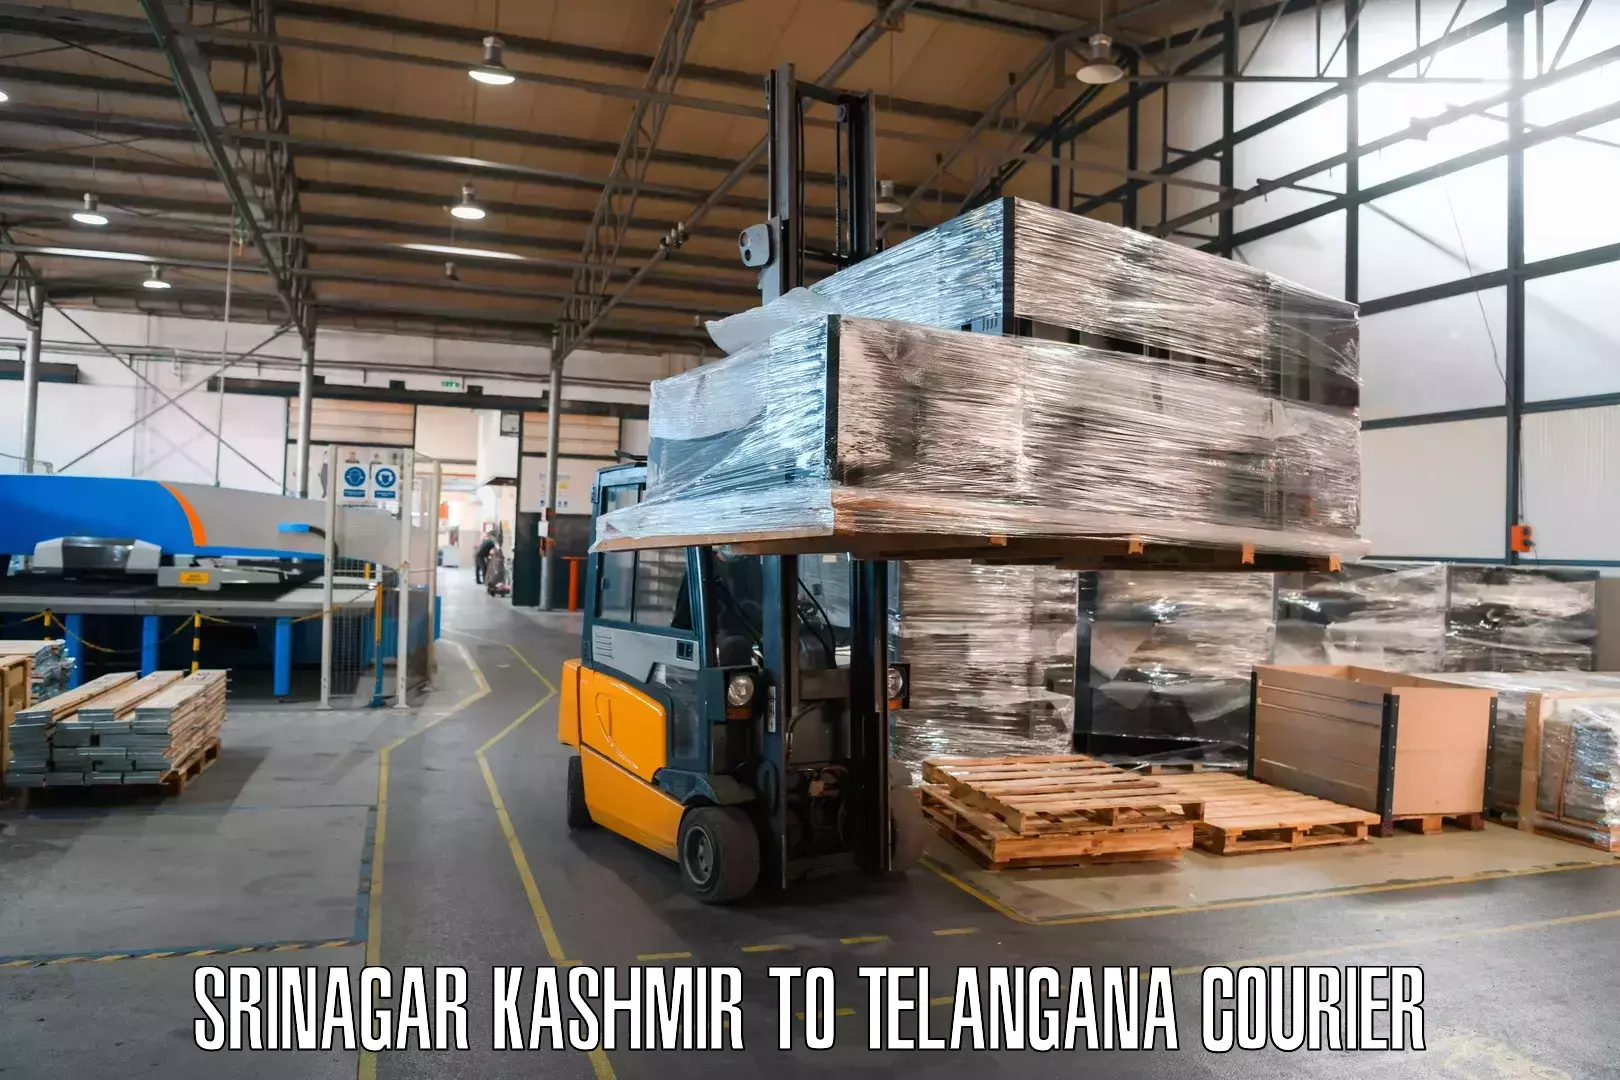 Express logistics providers Srinagar Kashmir to Gollapalli